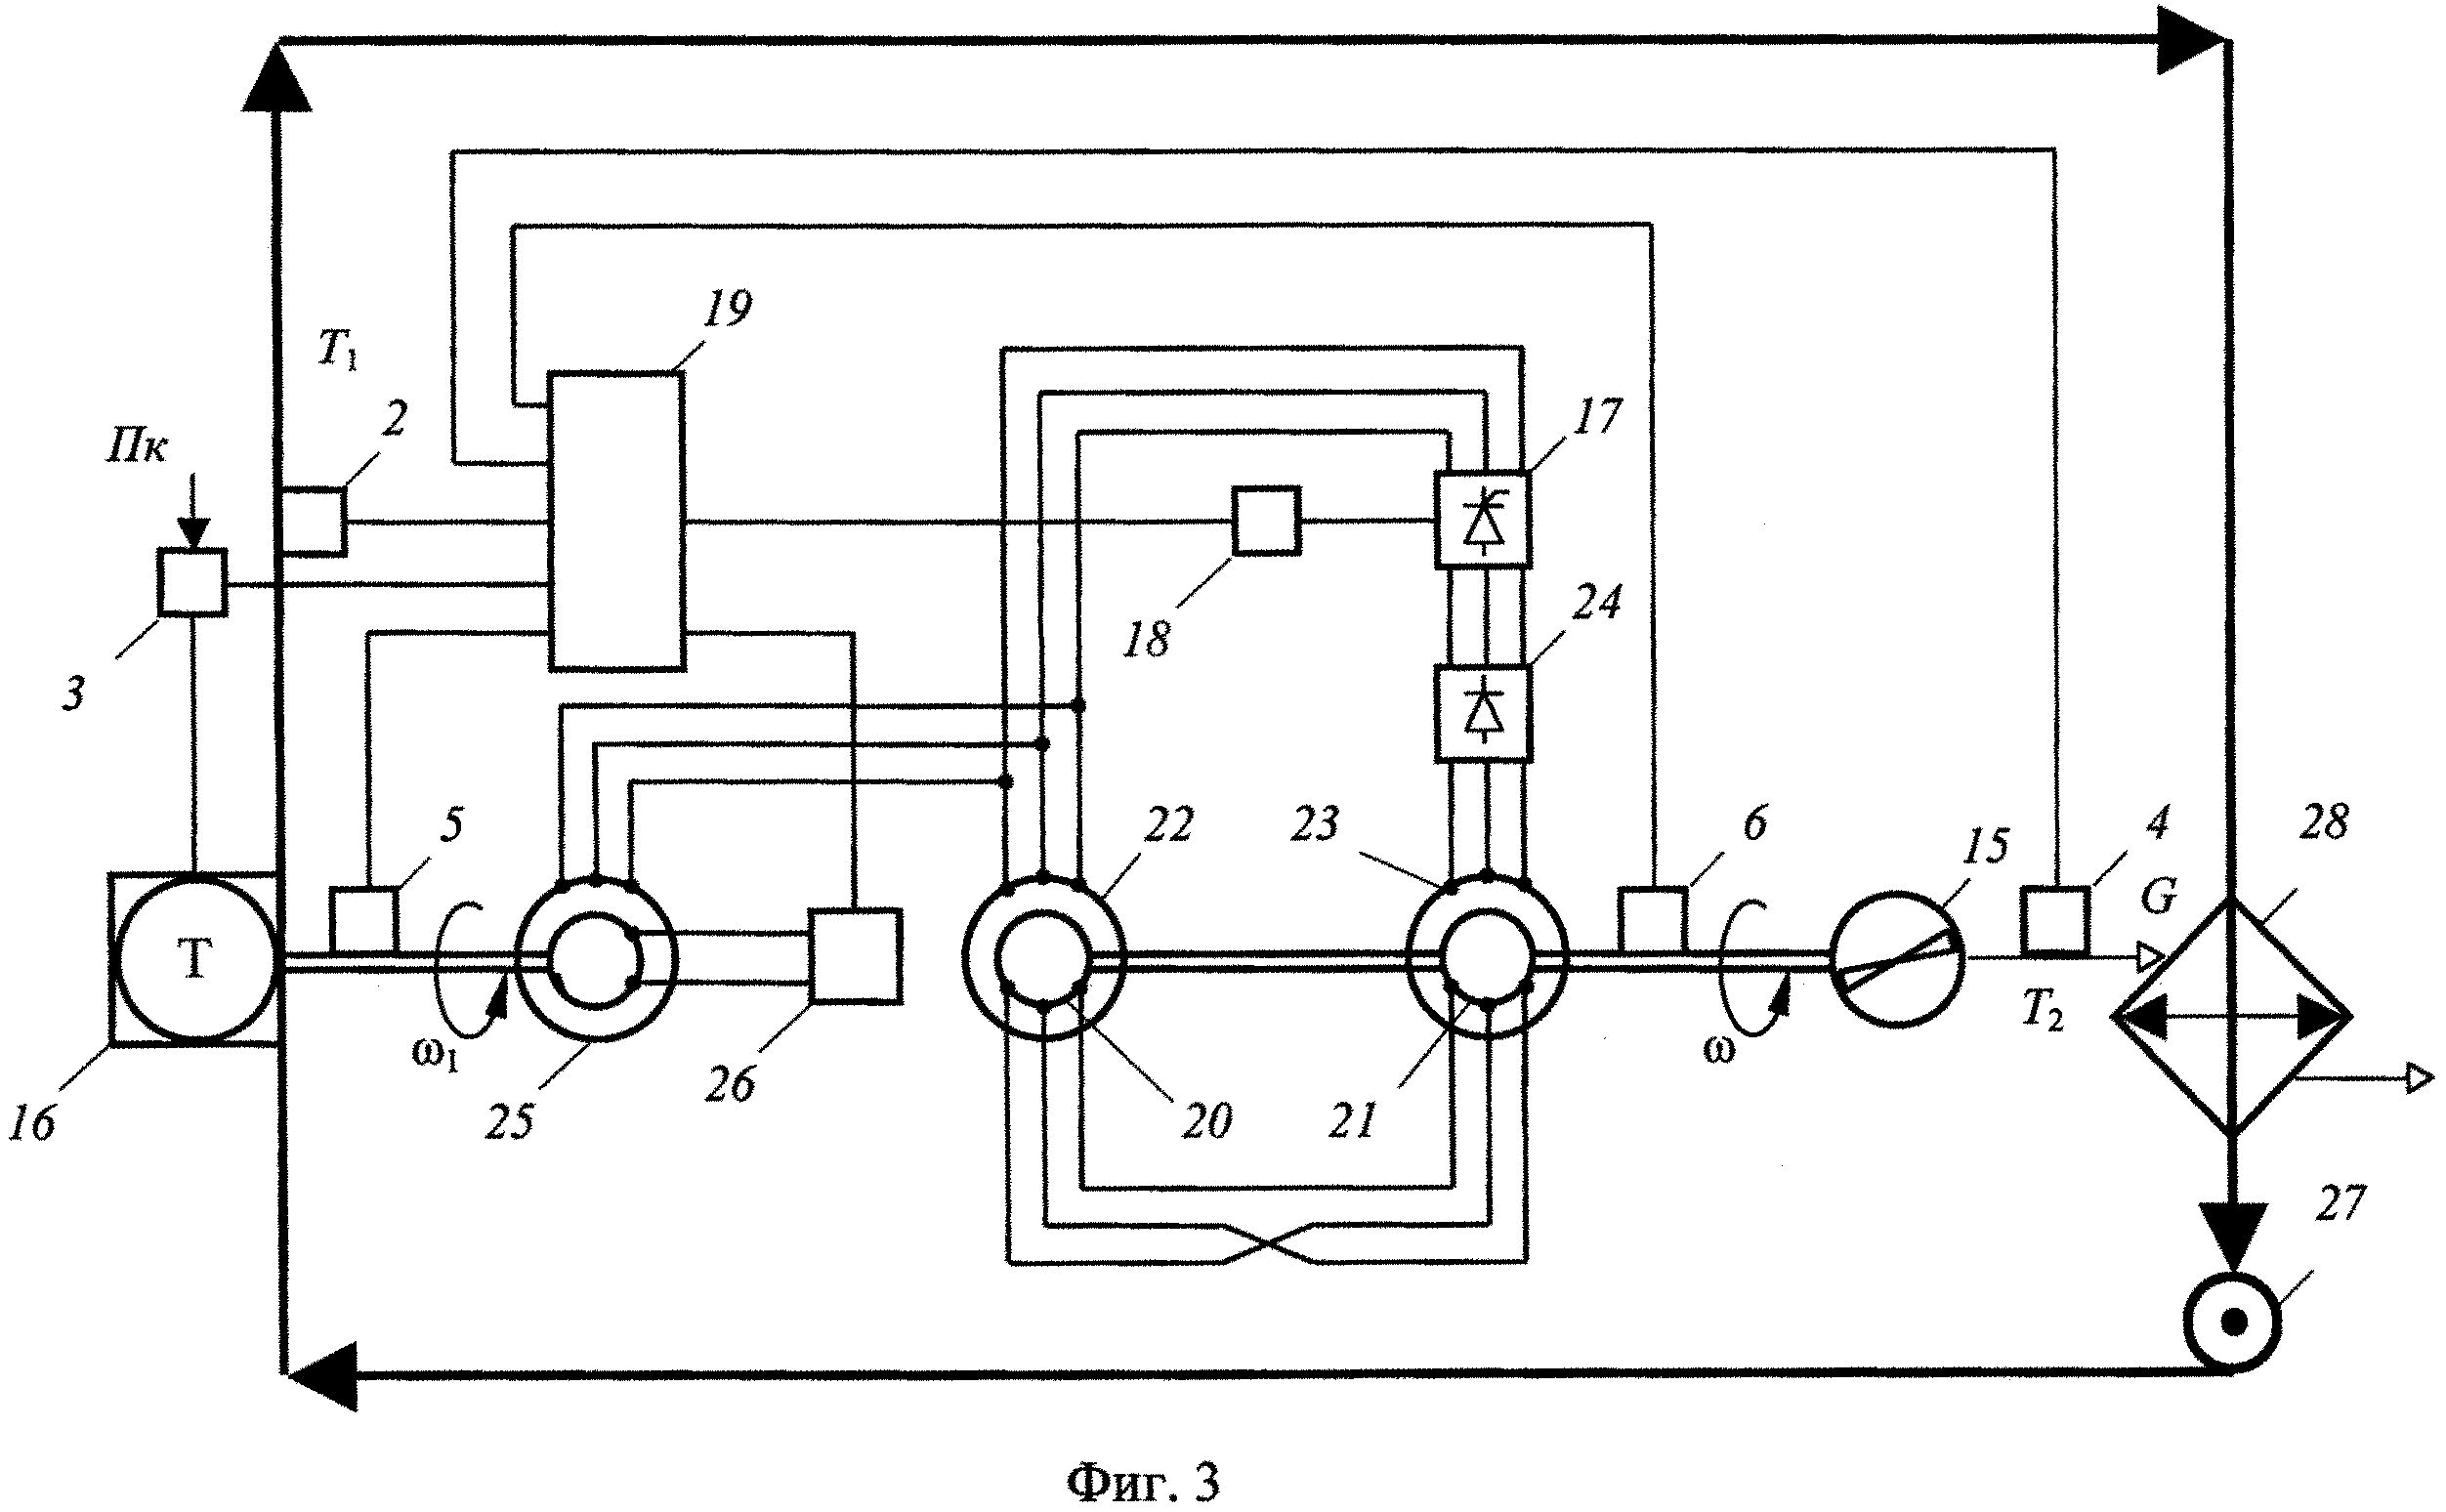 Автоматическая микропроцессорная система регулирования температуры энергетической установки транспортного средства